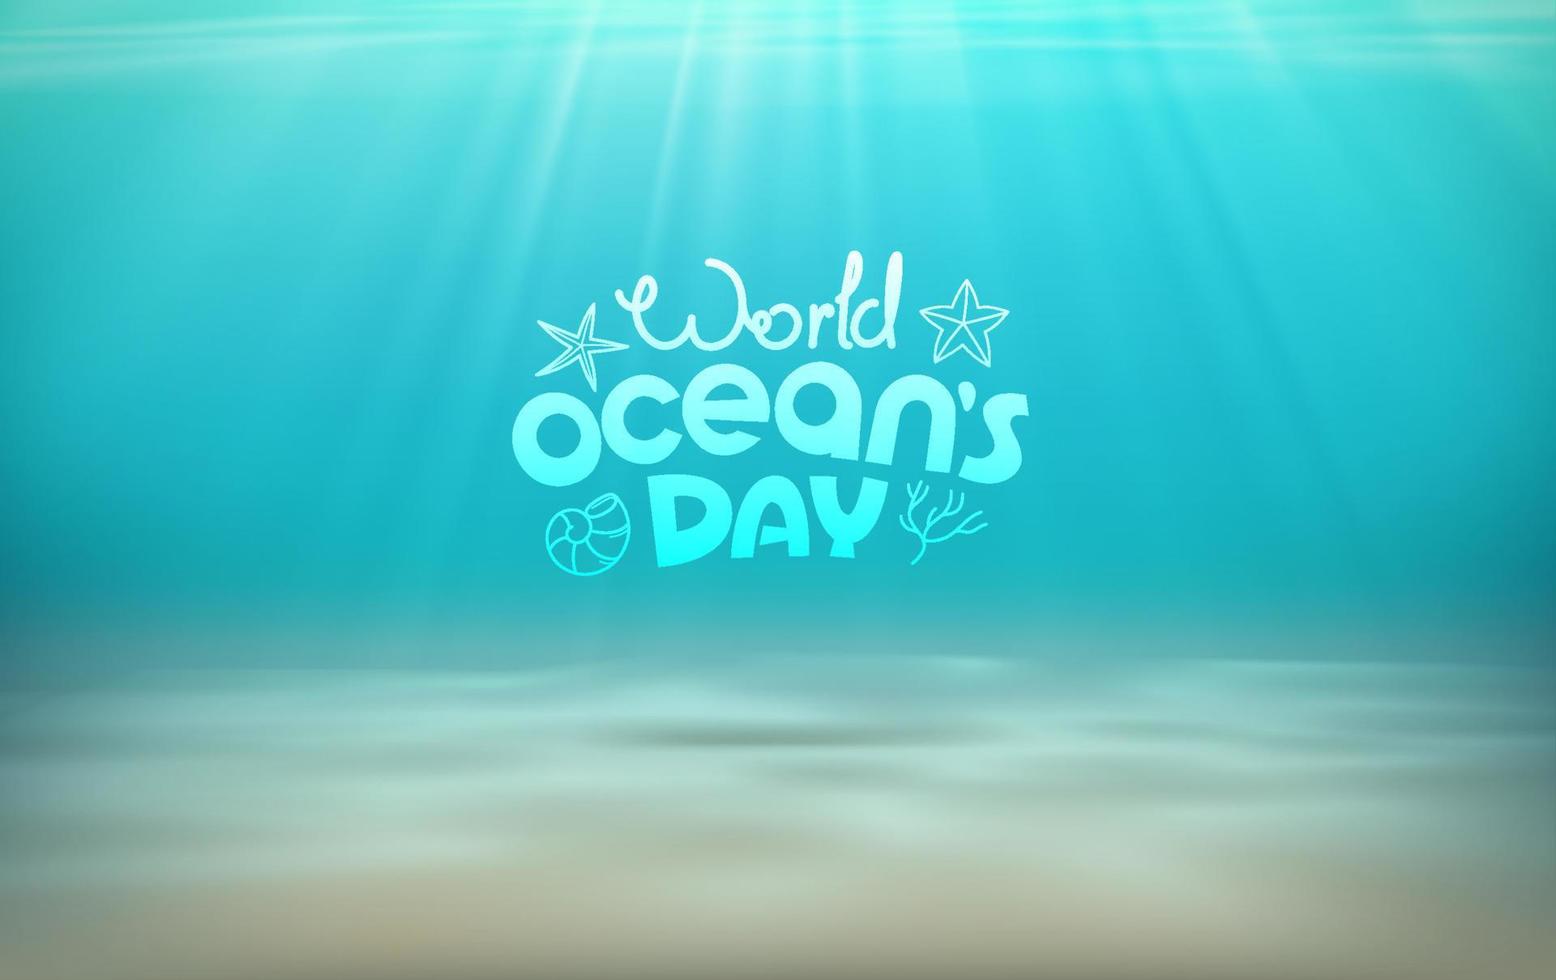 dia mundial dos oceanos. fundo azul do mar com efeito de luz do sol vetor